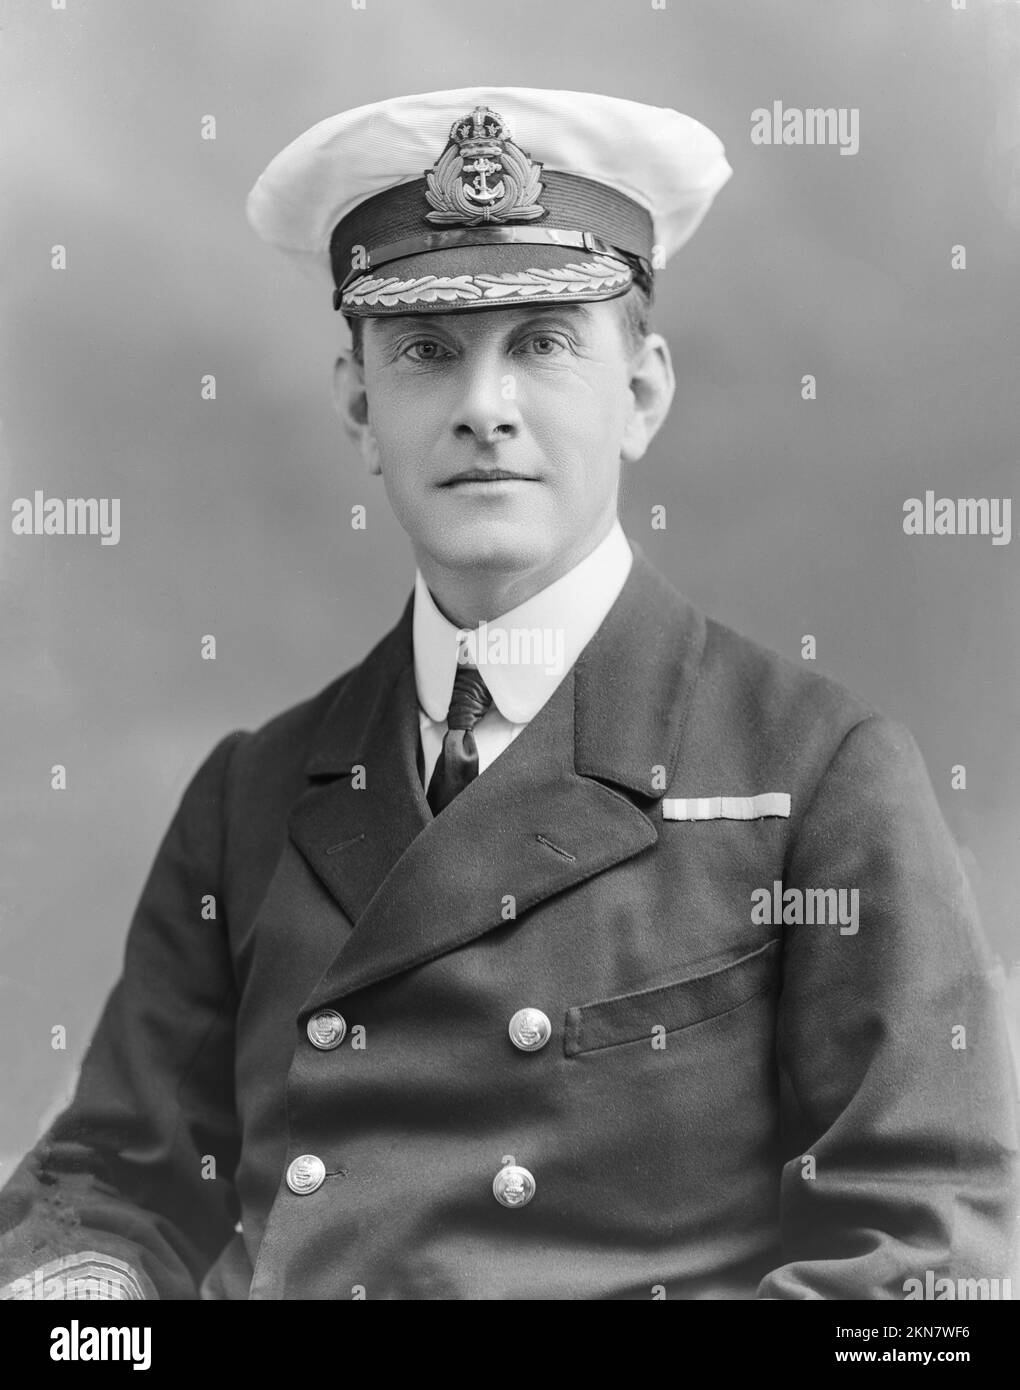 Fotografía vintage en blanco y negro tomada el 22nd de julio de 1915 del Capitán Bertram Mordaunt Chambers Royal Navy. Más tarde fue ascendido a Almirante. Foto tomada en los famosos estudios londinenses de Bassano. Foto de stock